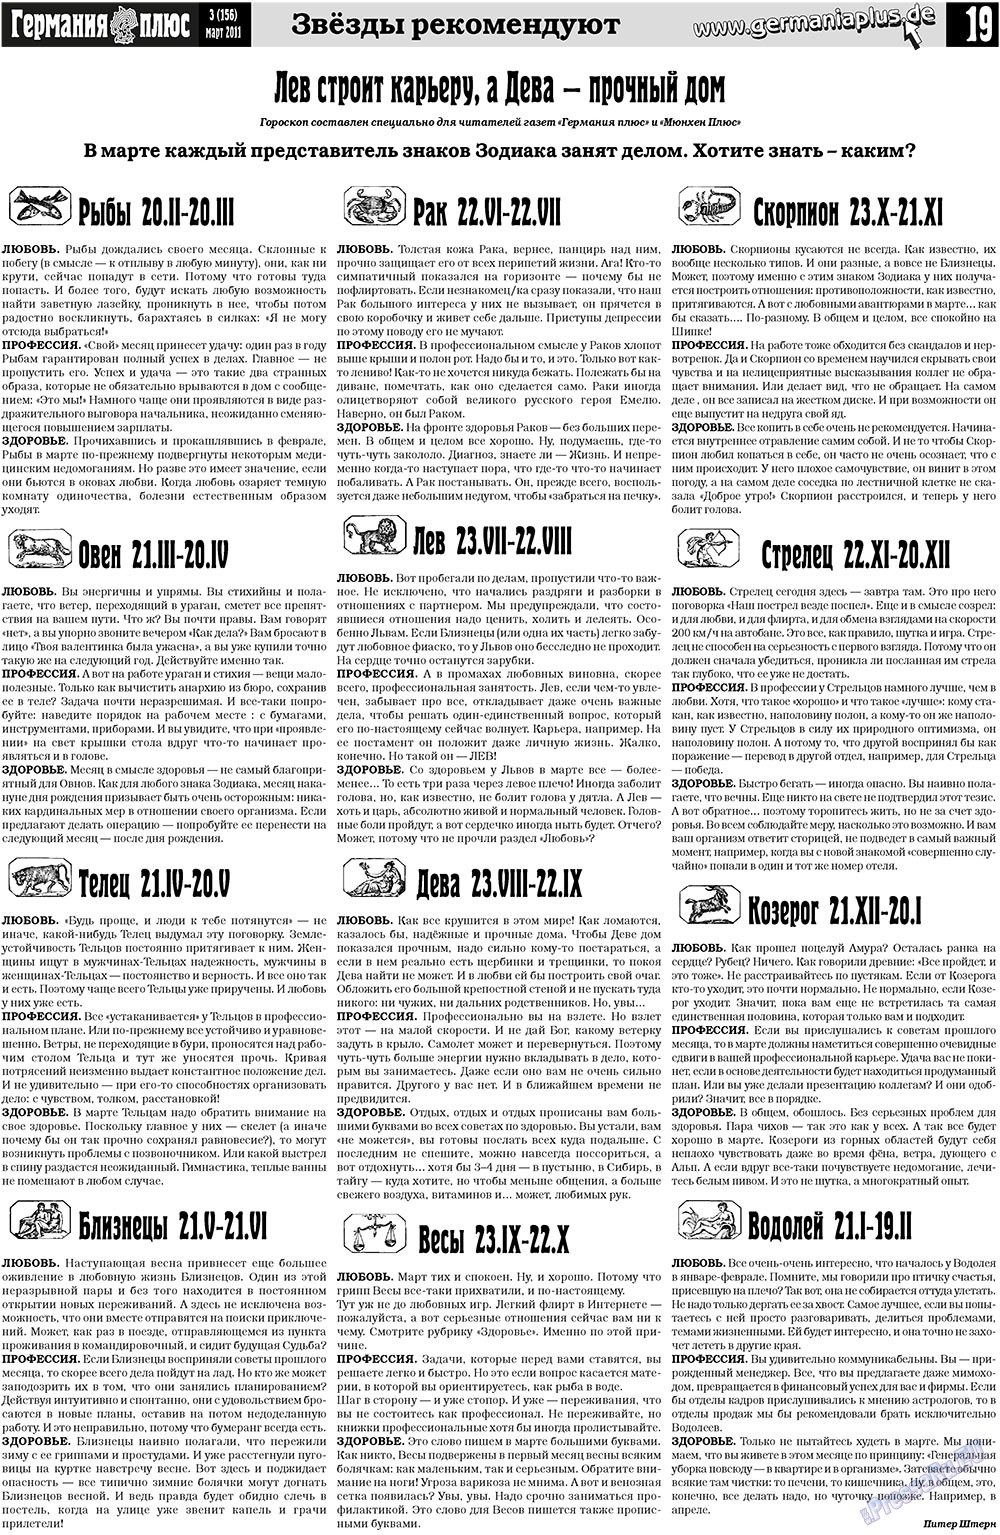 Германия плюс, газета. 2011 №3 стр.19